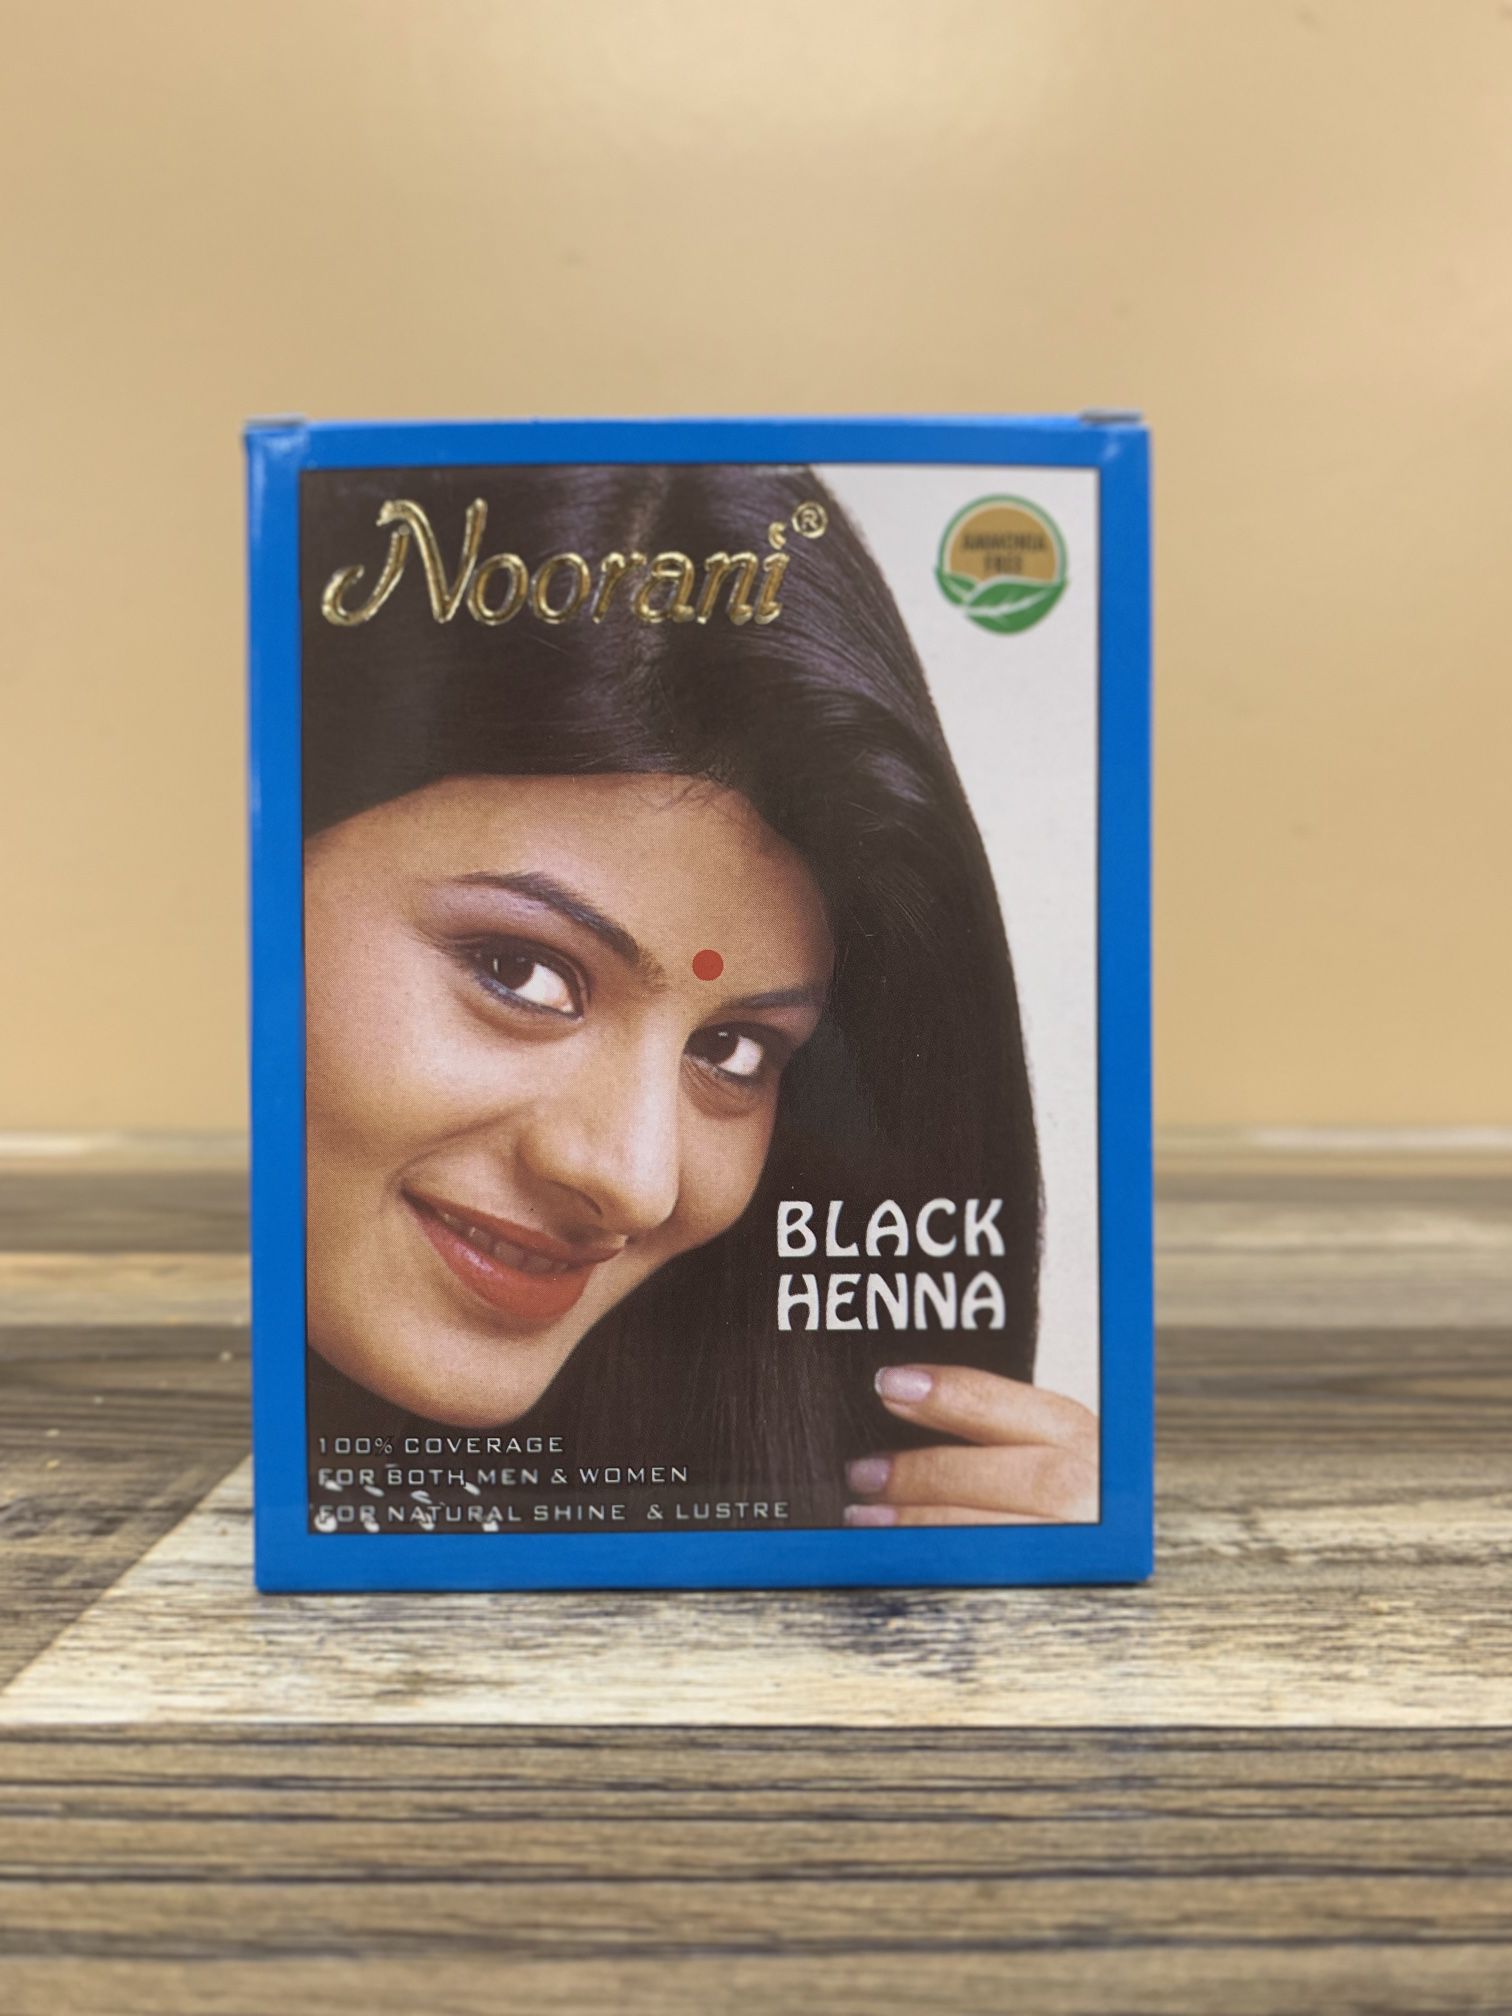 Noorani Black Henna